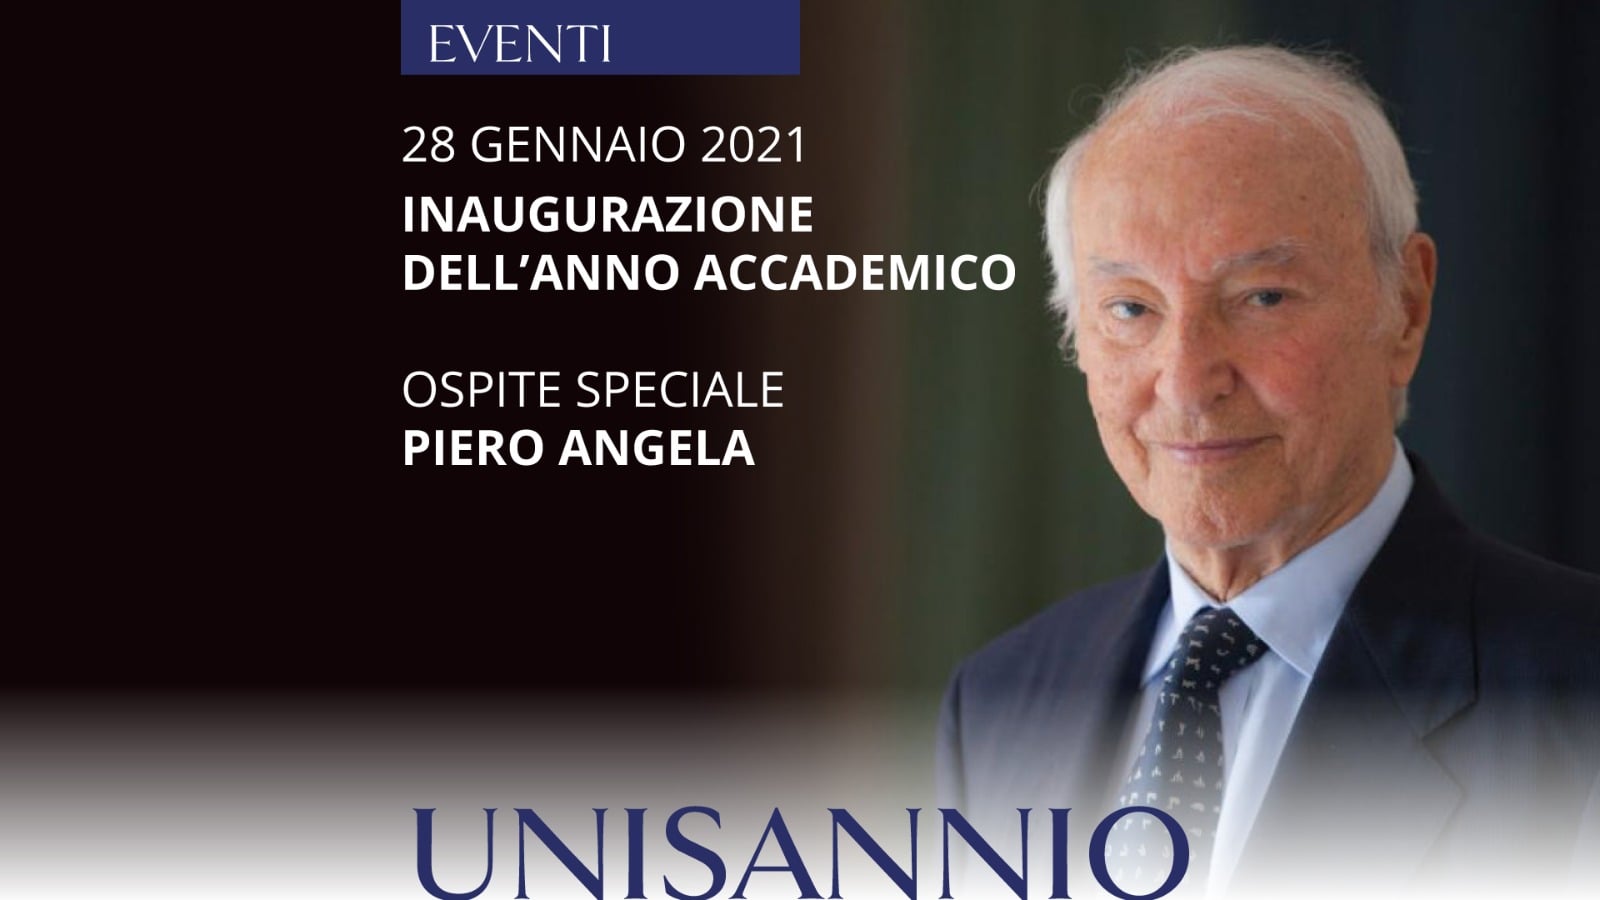 Benevento| Unisannio: Piero Angela presenzierà all’inaugurazione dell’anno accademico